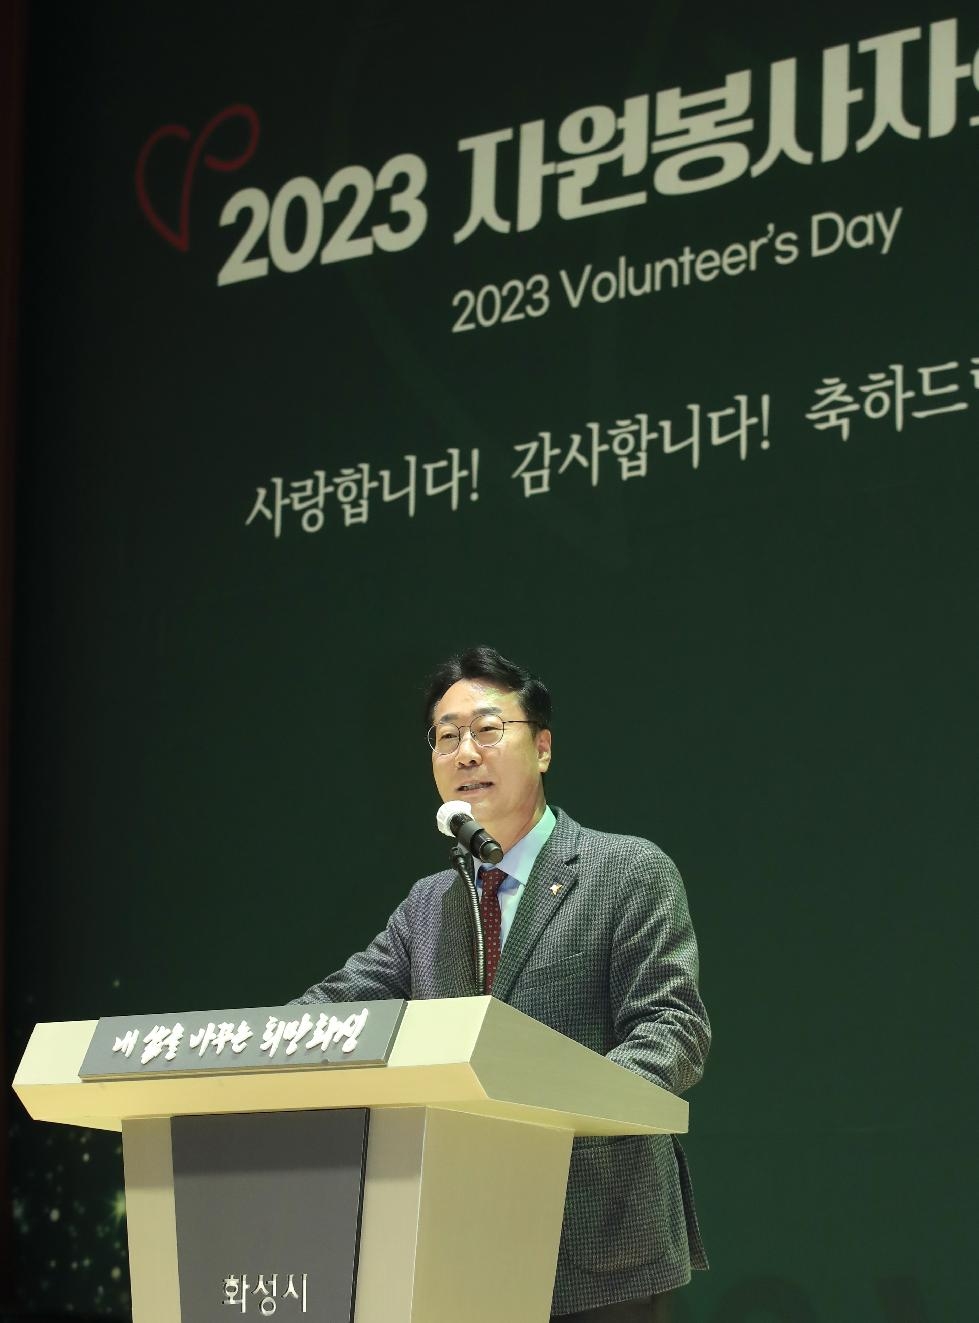 화성시, 2023년 자원봉사자의 날 기념식 개최